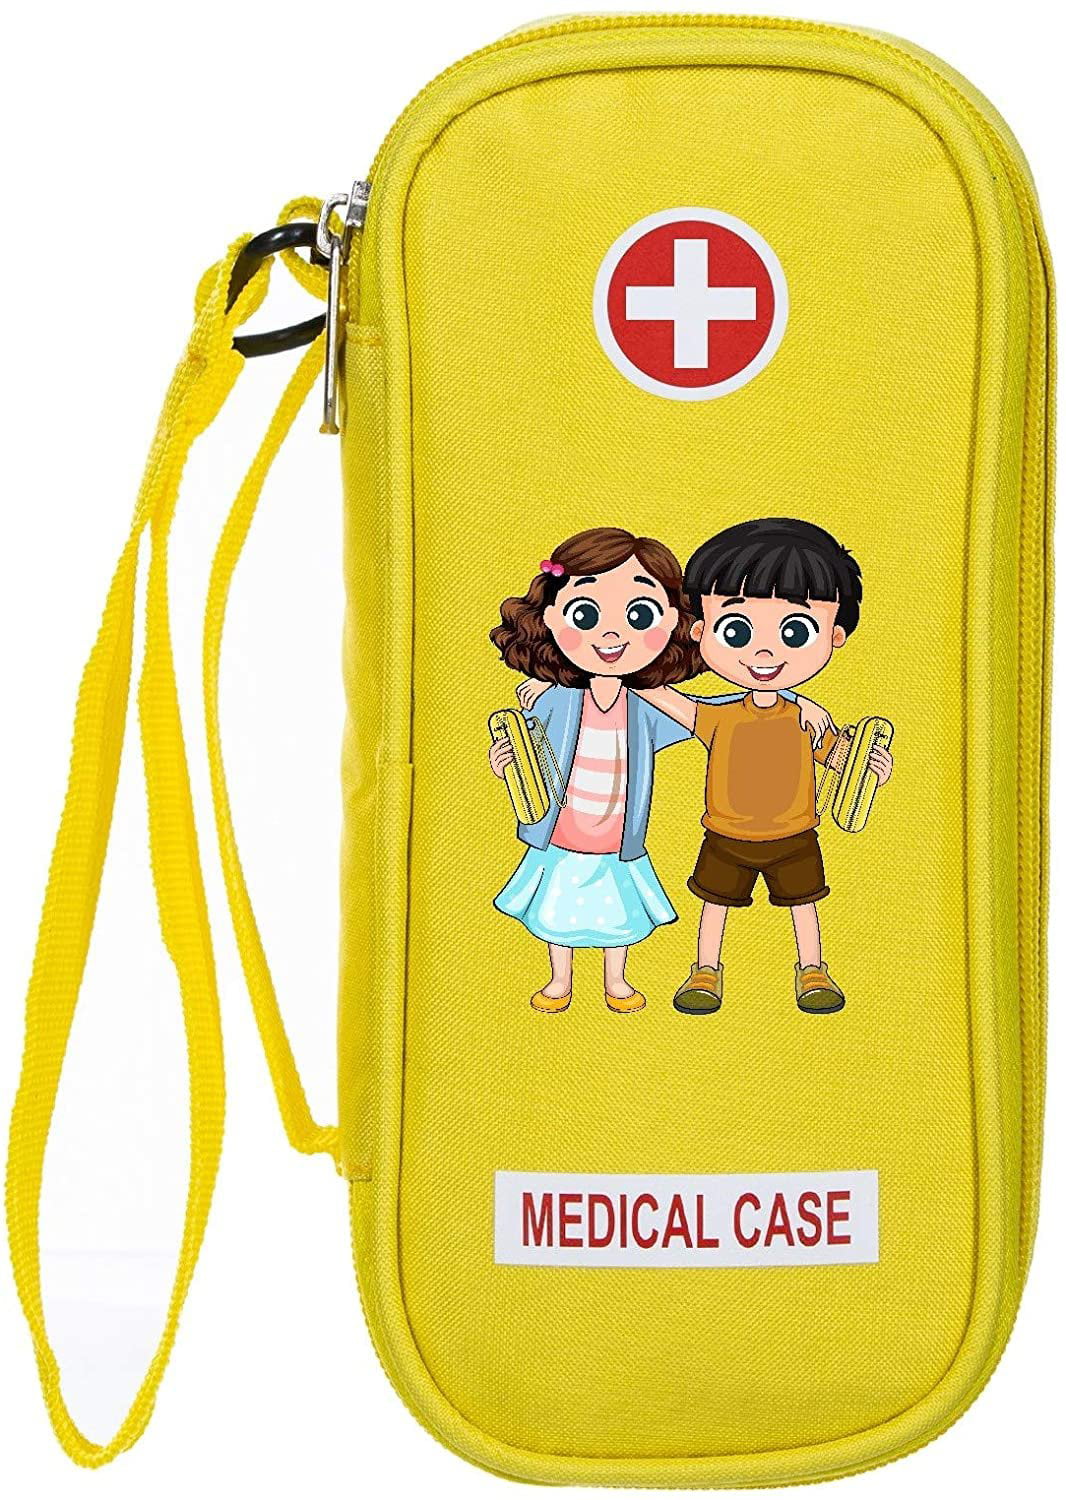 PracMedic Bags Epipen Case - Epi pens Carrying Case- Medical Case for Kids  - Insulated to Hold Inhaler, Epi Pen, Auvi Q, Epinephrine, Allergies  Medication - Medicine Bag for Traveling (Blue) :